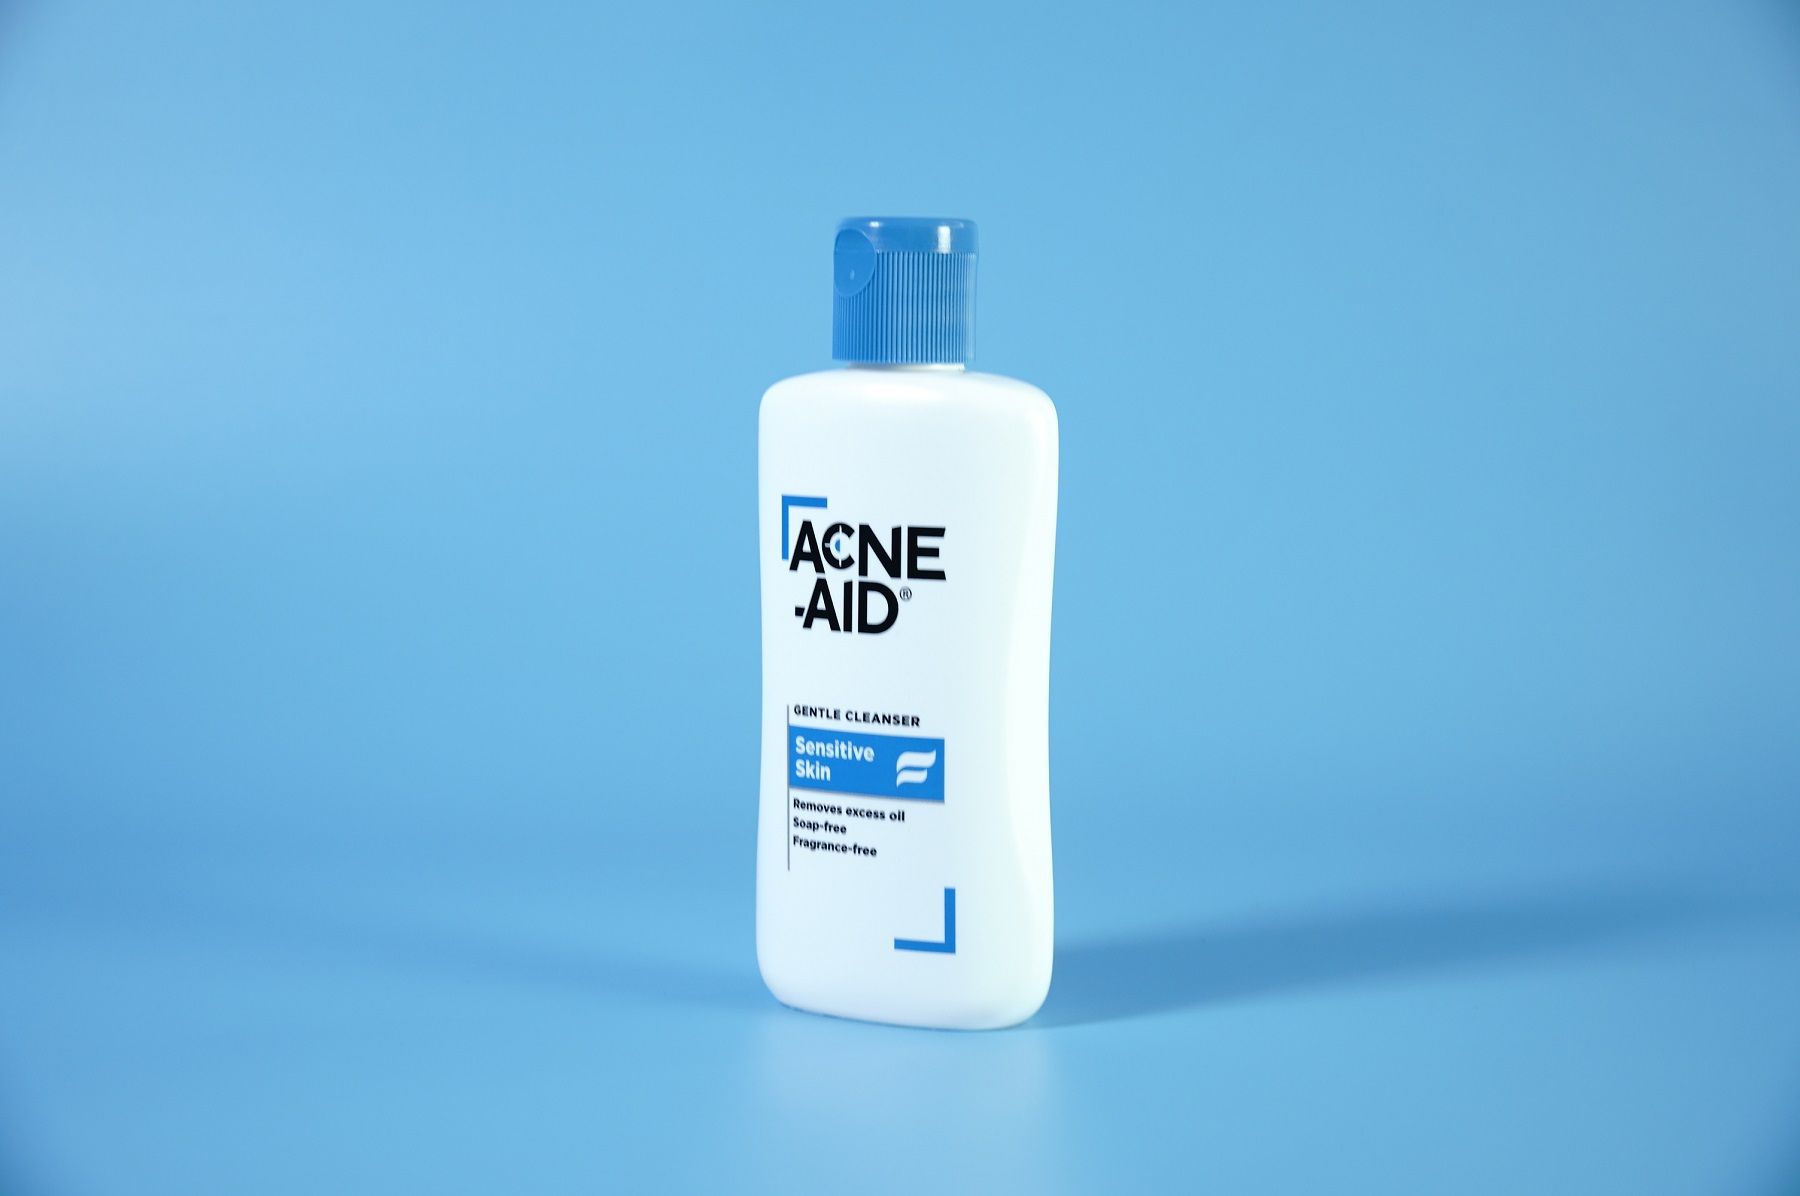  Sữa rửa mặt Acne-Aid Gentle Cleanser Sensitive Skin cho da mụn, nhạy cảm - 100ml 